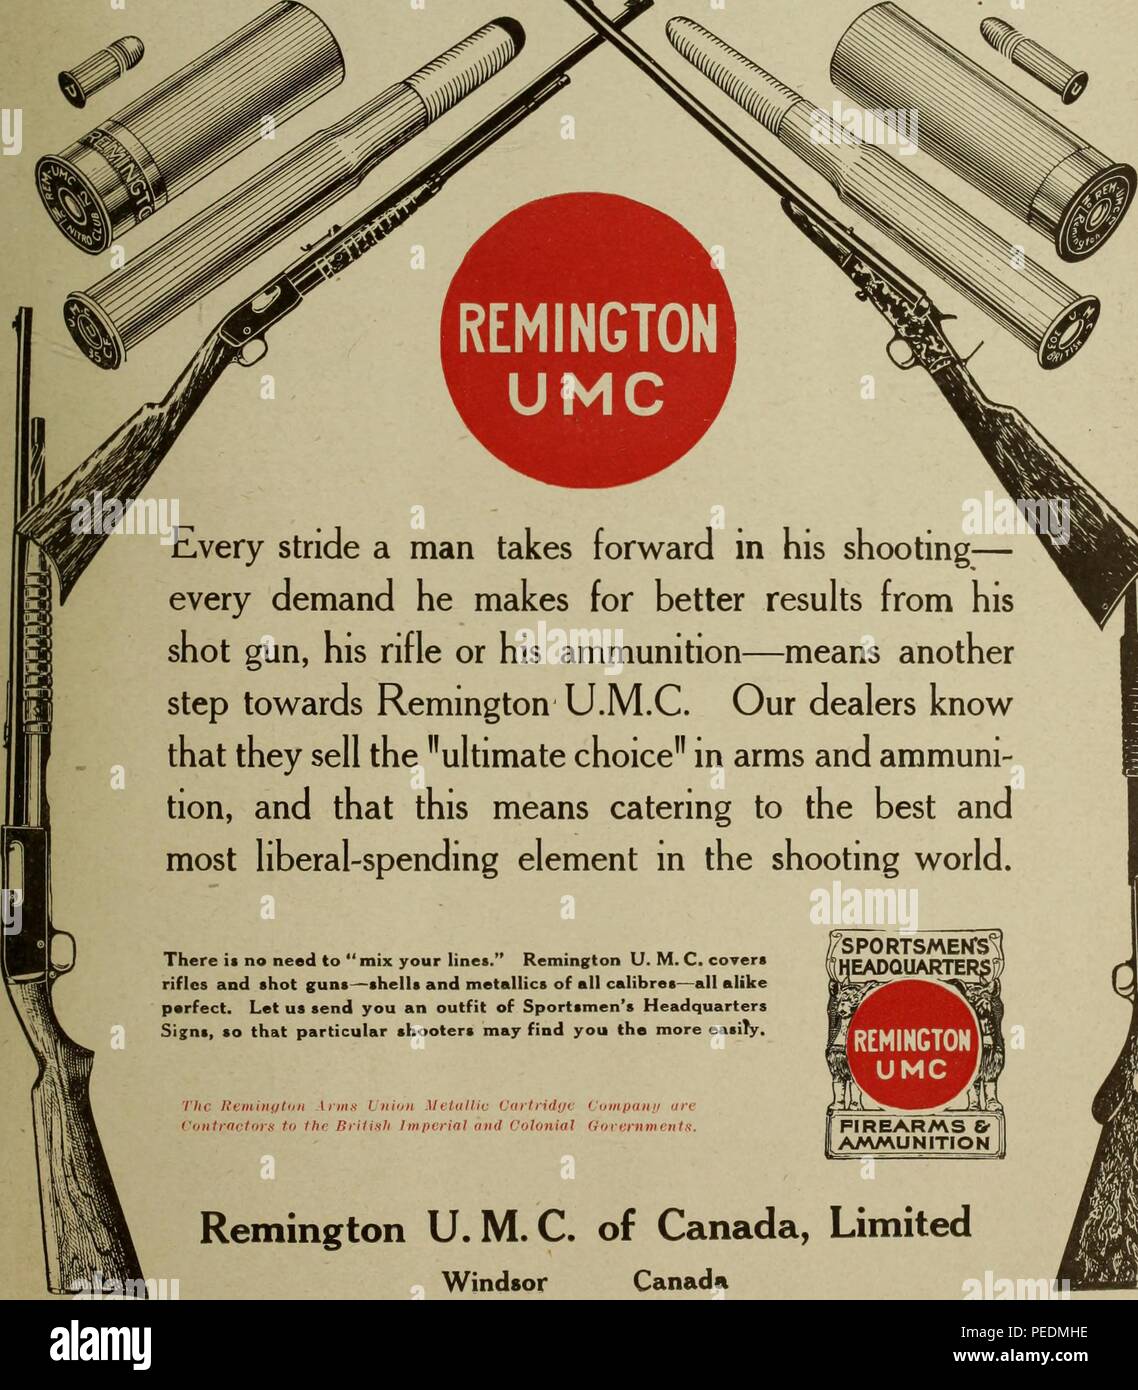 Schwarz-weiß drucken Werbung Remington UMC (Union Metallic Cartridge) Schrotflinten und Muscheln, mit Bildern von jedem, und mit marketing Text darauf hin, dass integrierte Remington Komponenten machen es unnötig, bin Ihr Linien', 1917 ix. Mit freundlicher Genehmigung Internet Archive. () Stockfoto